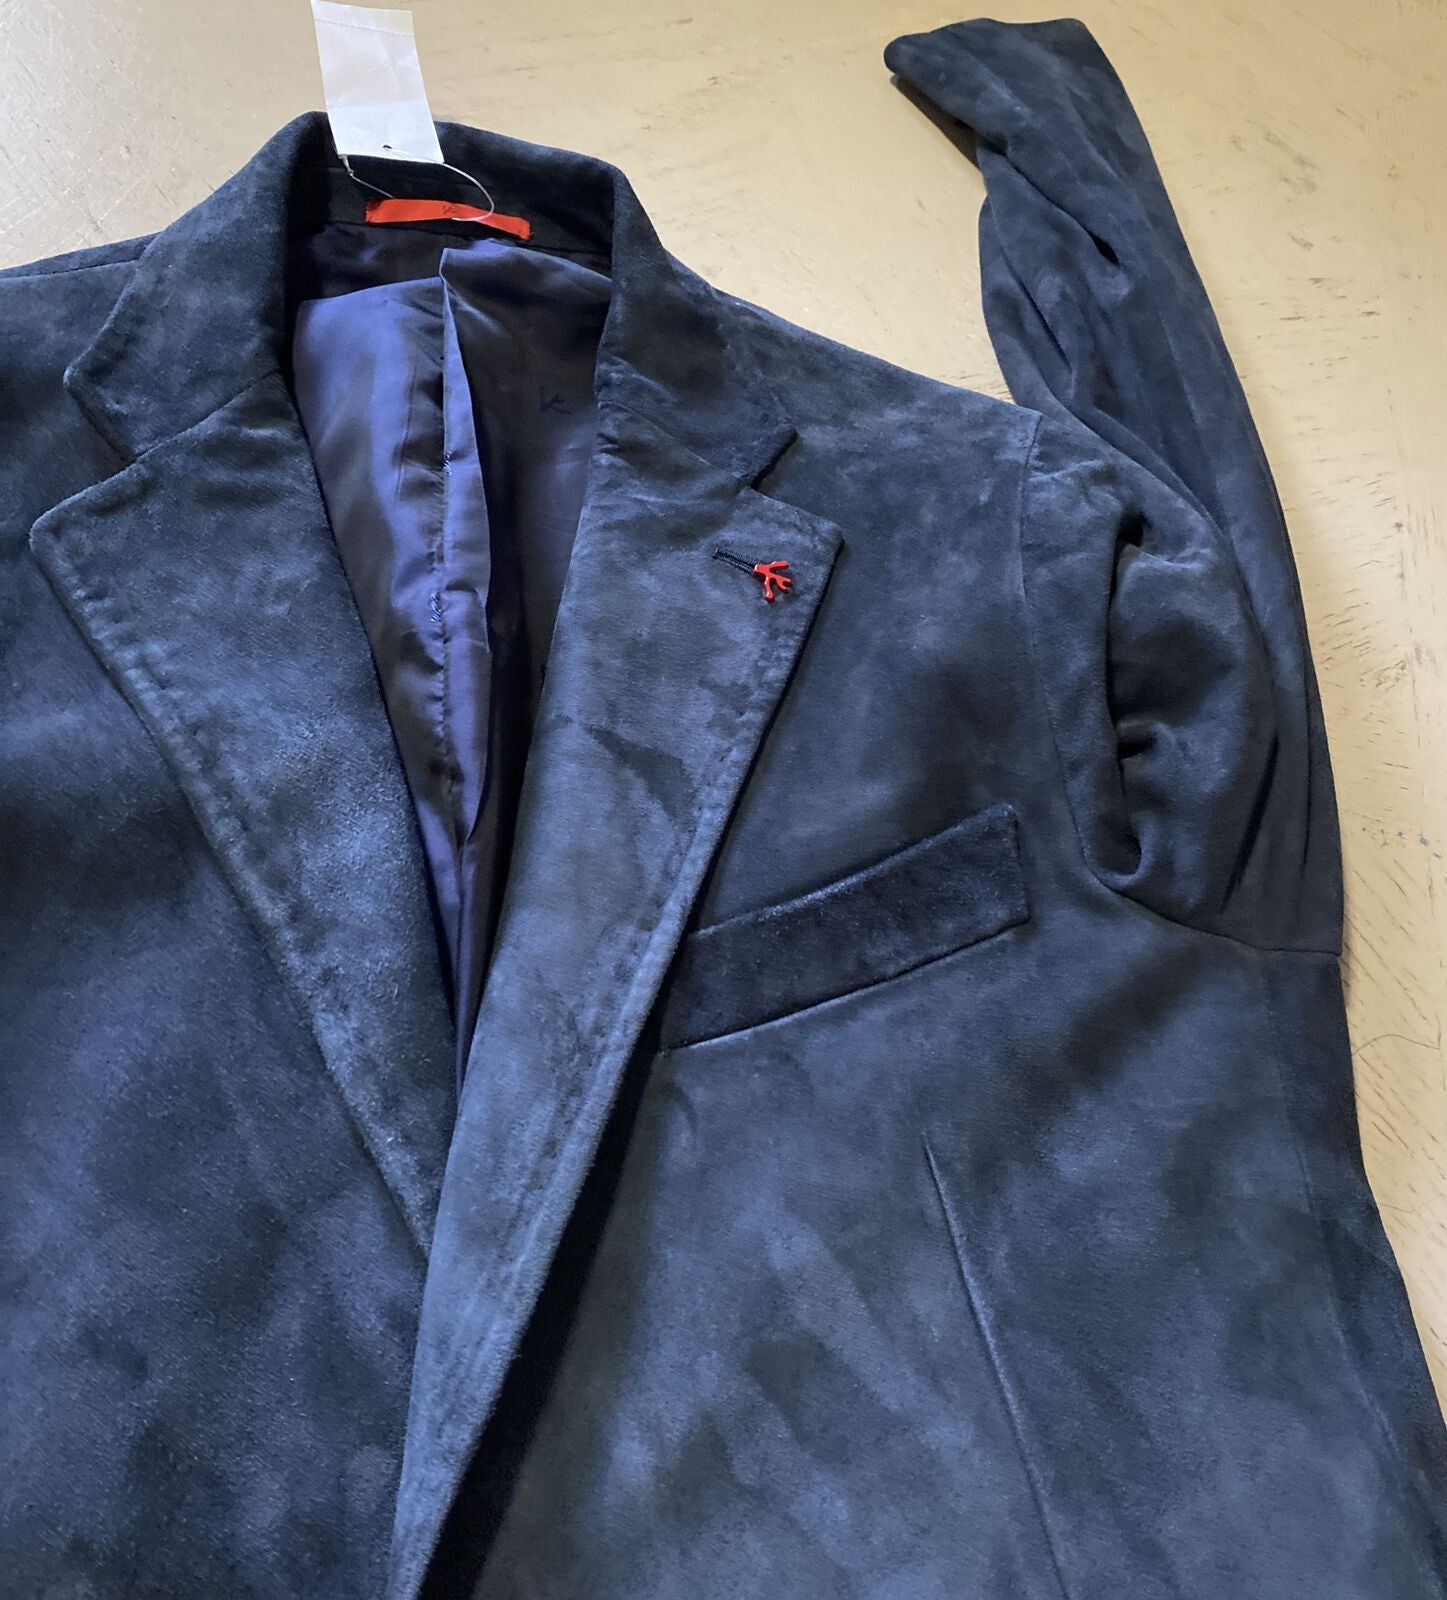 NWT $4995 Isaia Мужской шелковый замшевый пиджак Спортивное пальто Темно-синее 42R US/52R EU